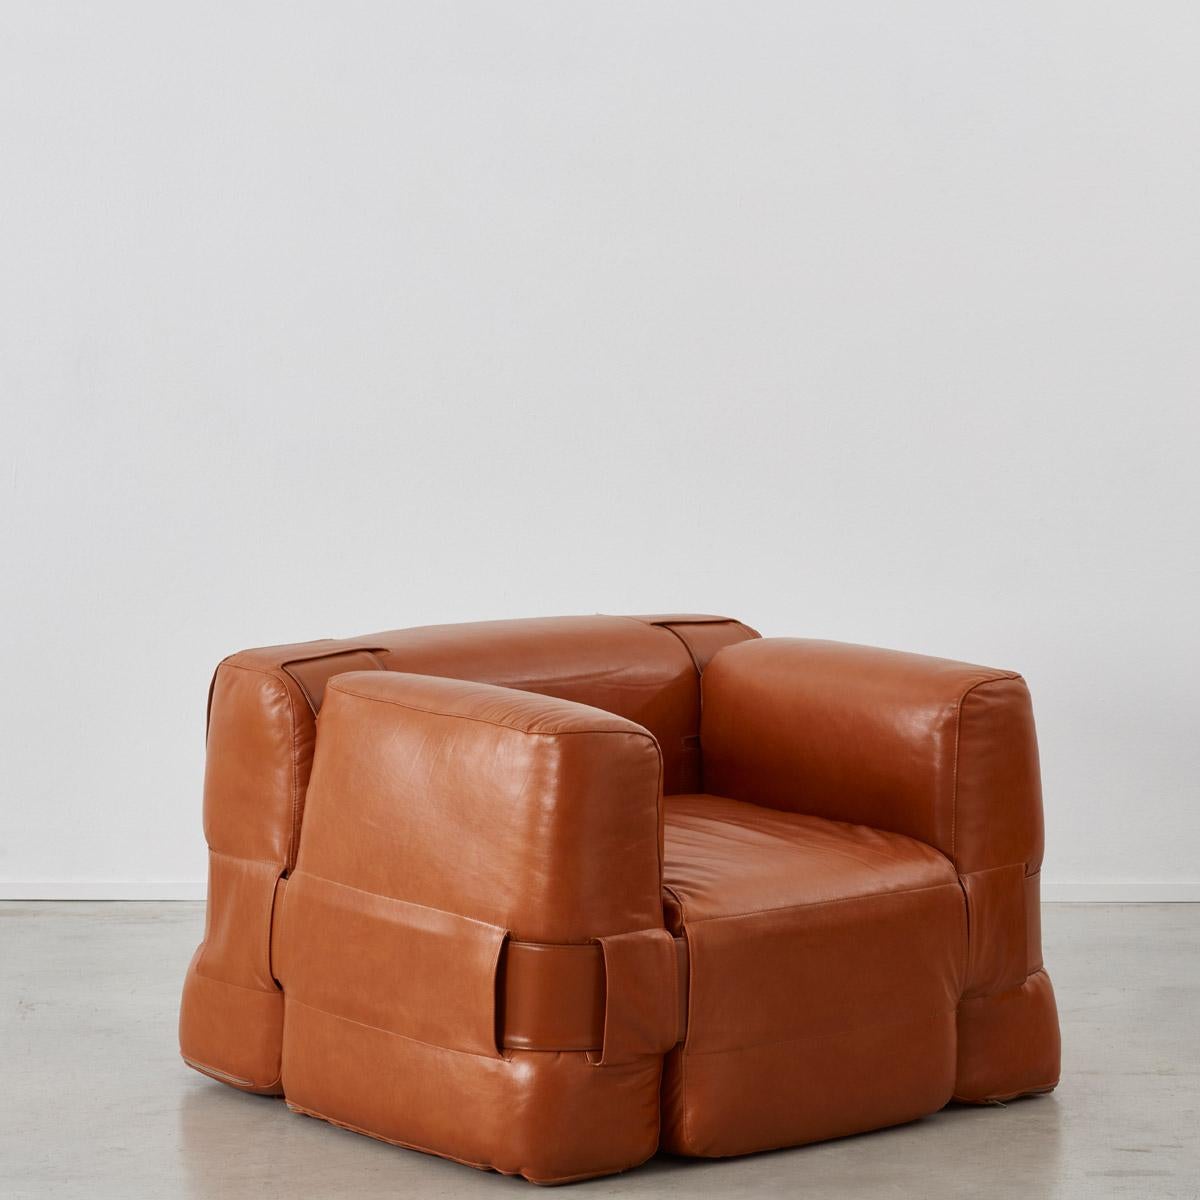 Leather Mario Bellini 932 Quartet Sofa & Chair for Cassina, Italy 1964